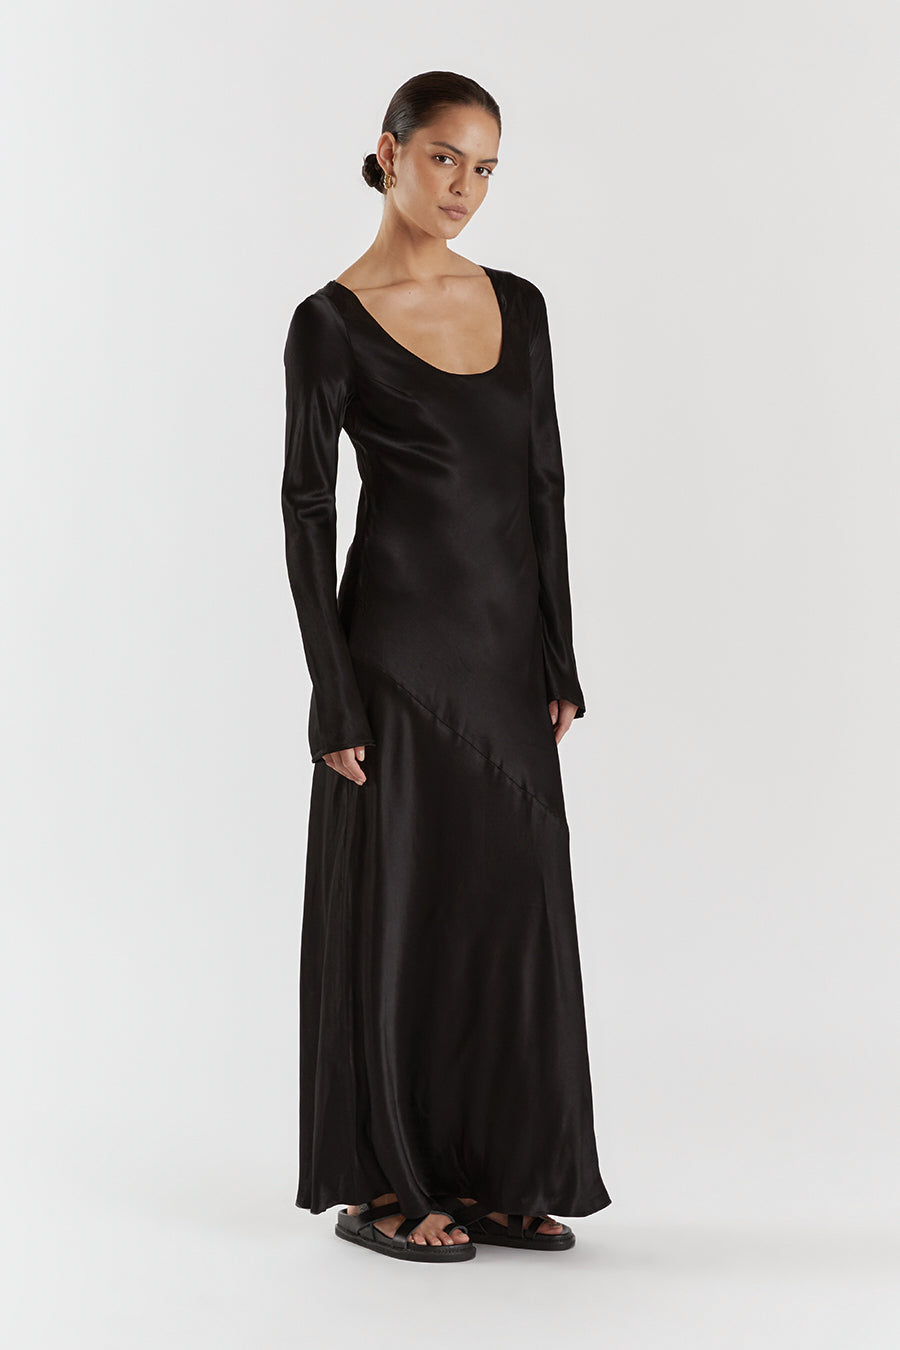 Black Satin Dress – Miss Satin